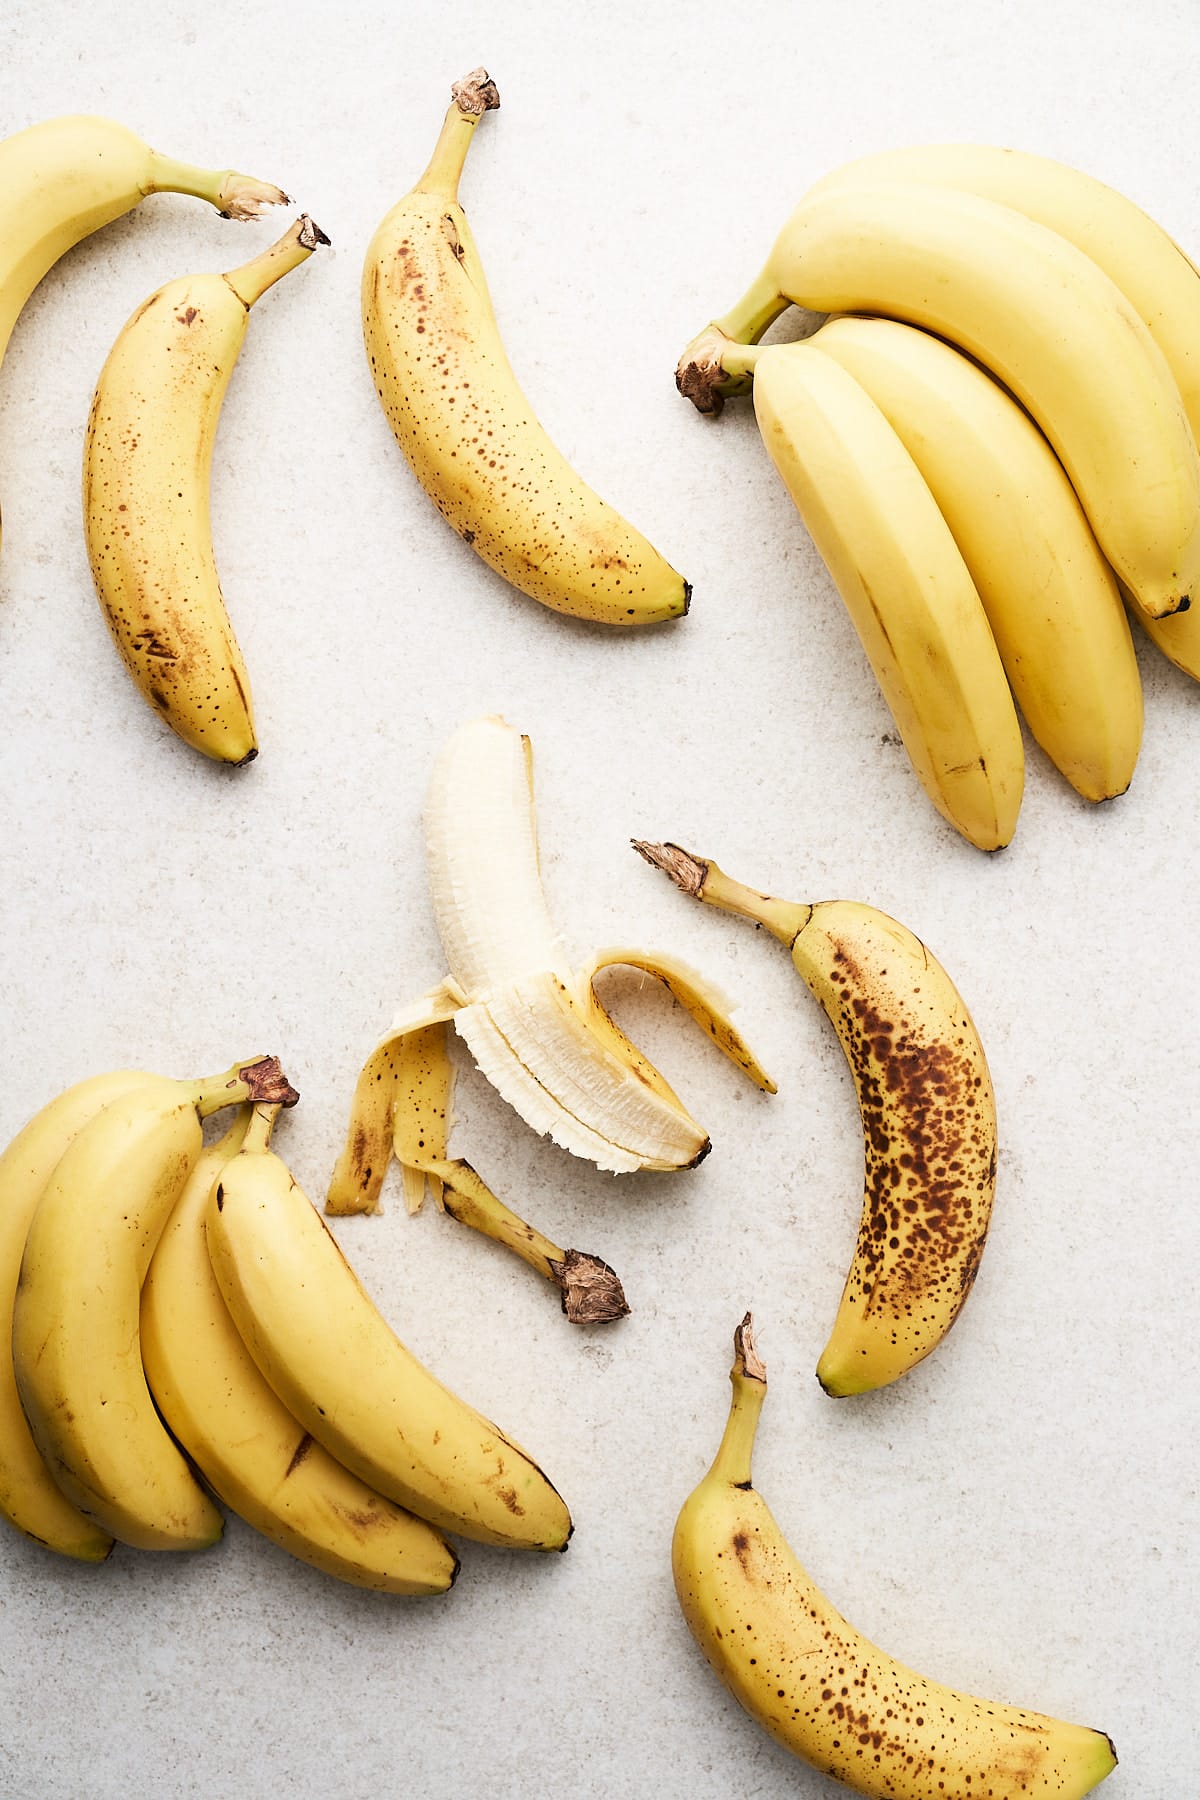 Bananas on a counter.